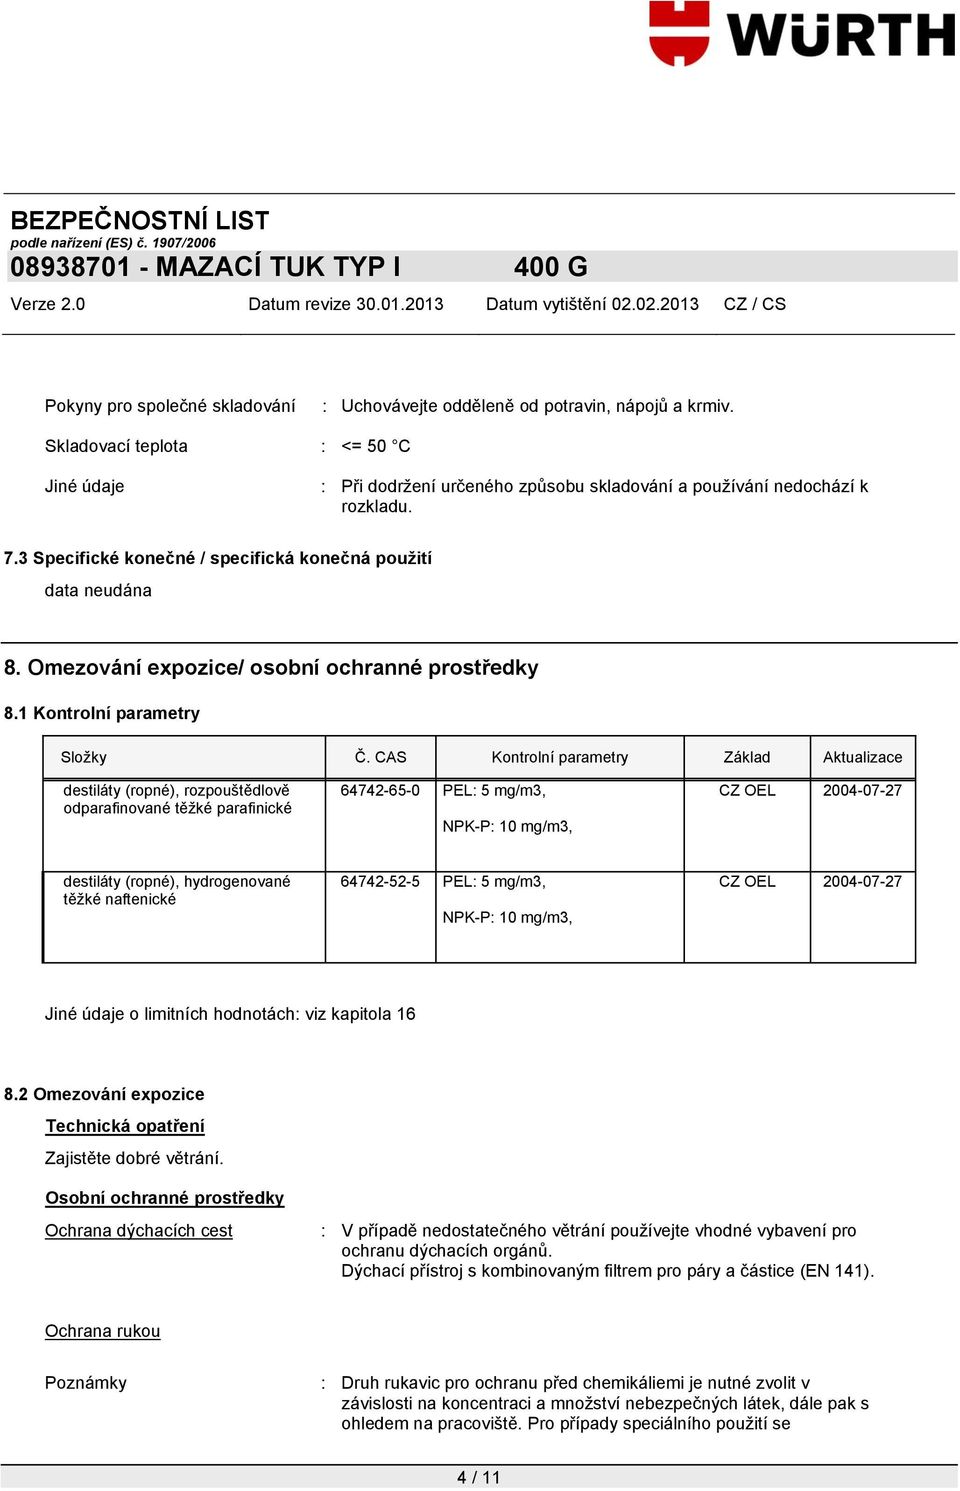 CAS Kontrolní parametry Základ Aktualizace destiláty (ropné), rozpouštědlově odparafinované těžké parafinické 64742-65-0 PEL: 5 mg/m3, NPK-P: 10 mg/m3, CZ OEL 2004-07-27 destiláty (ropné),